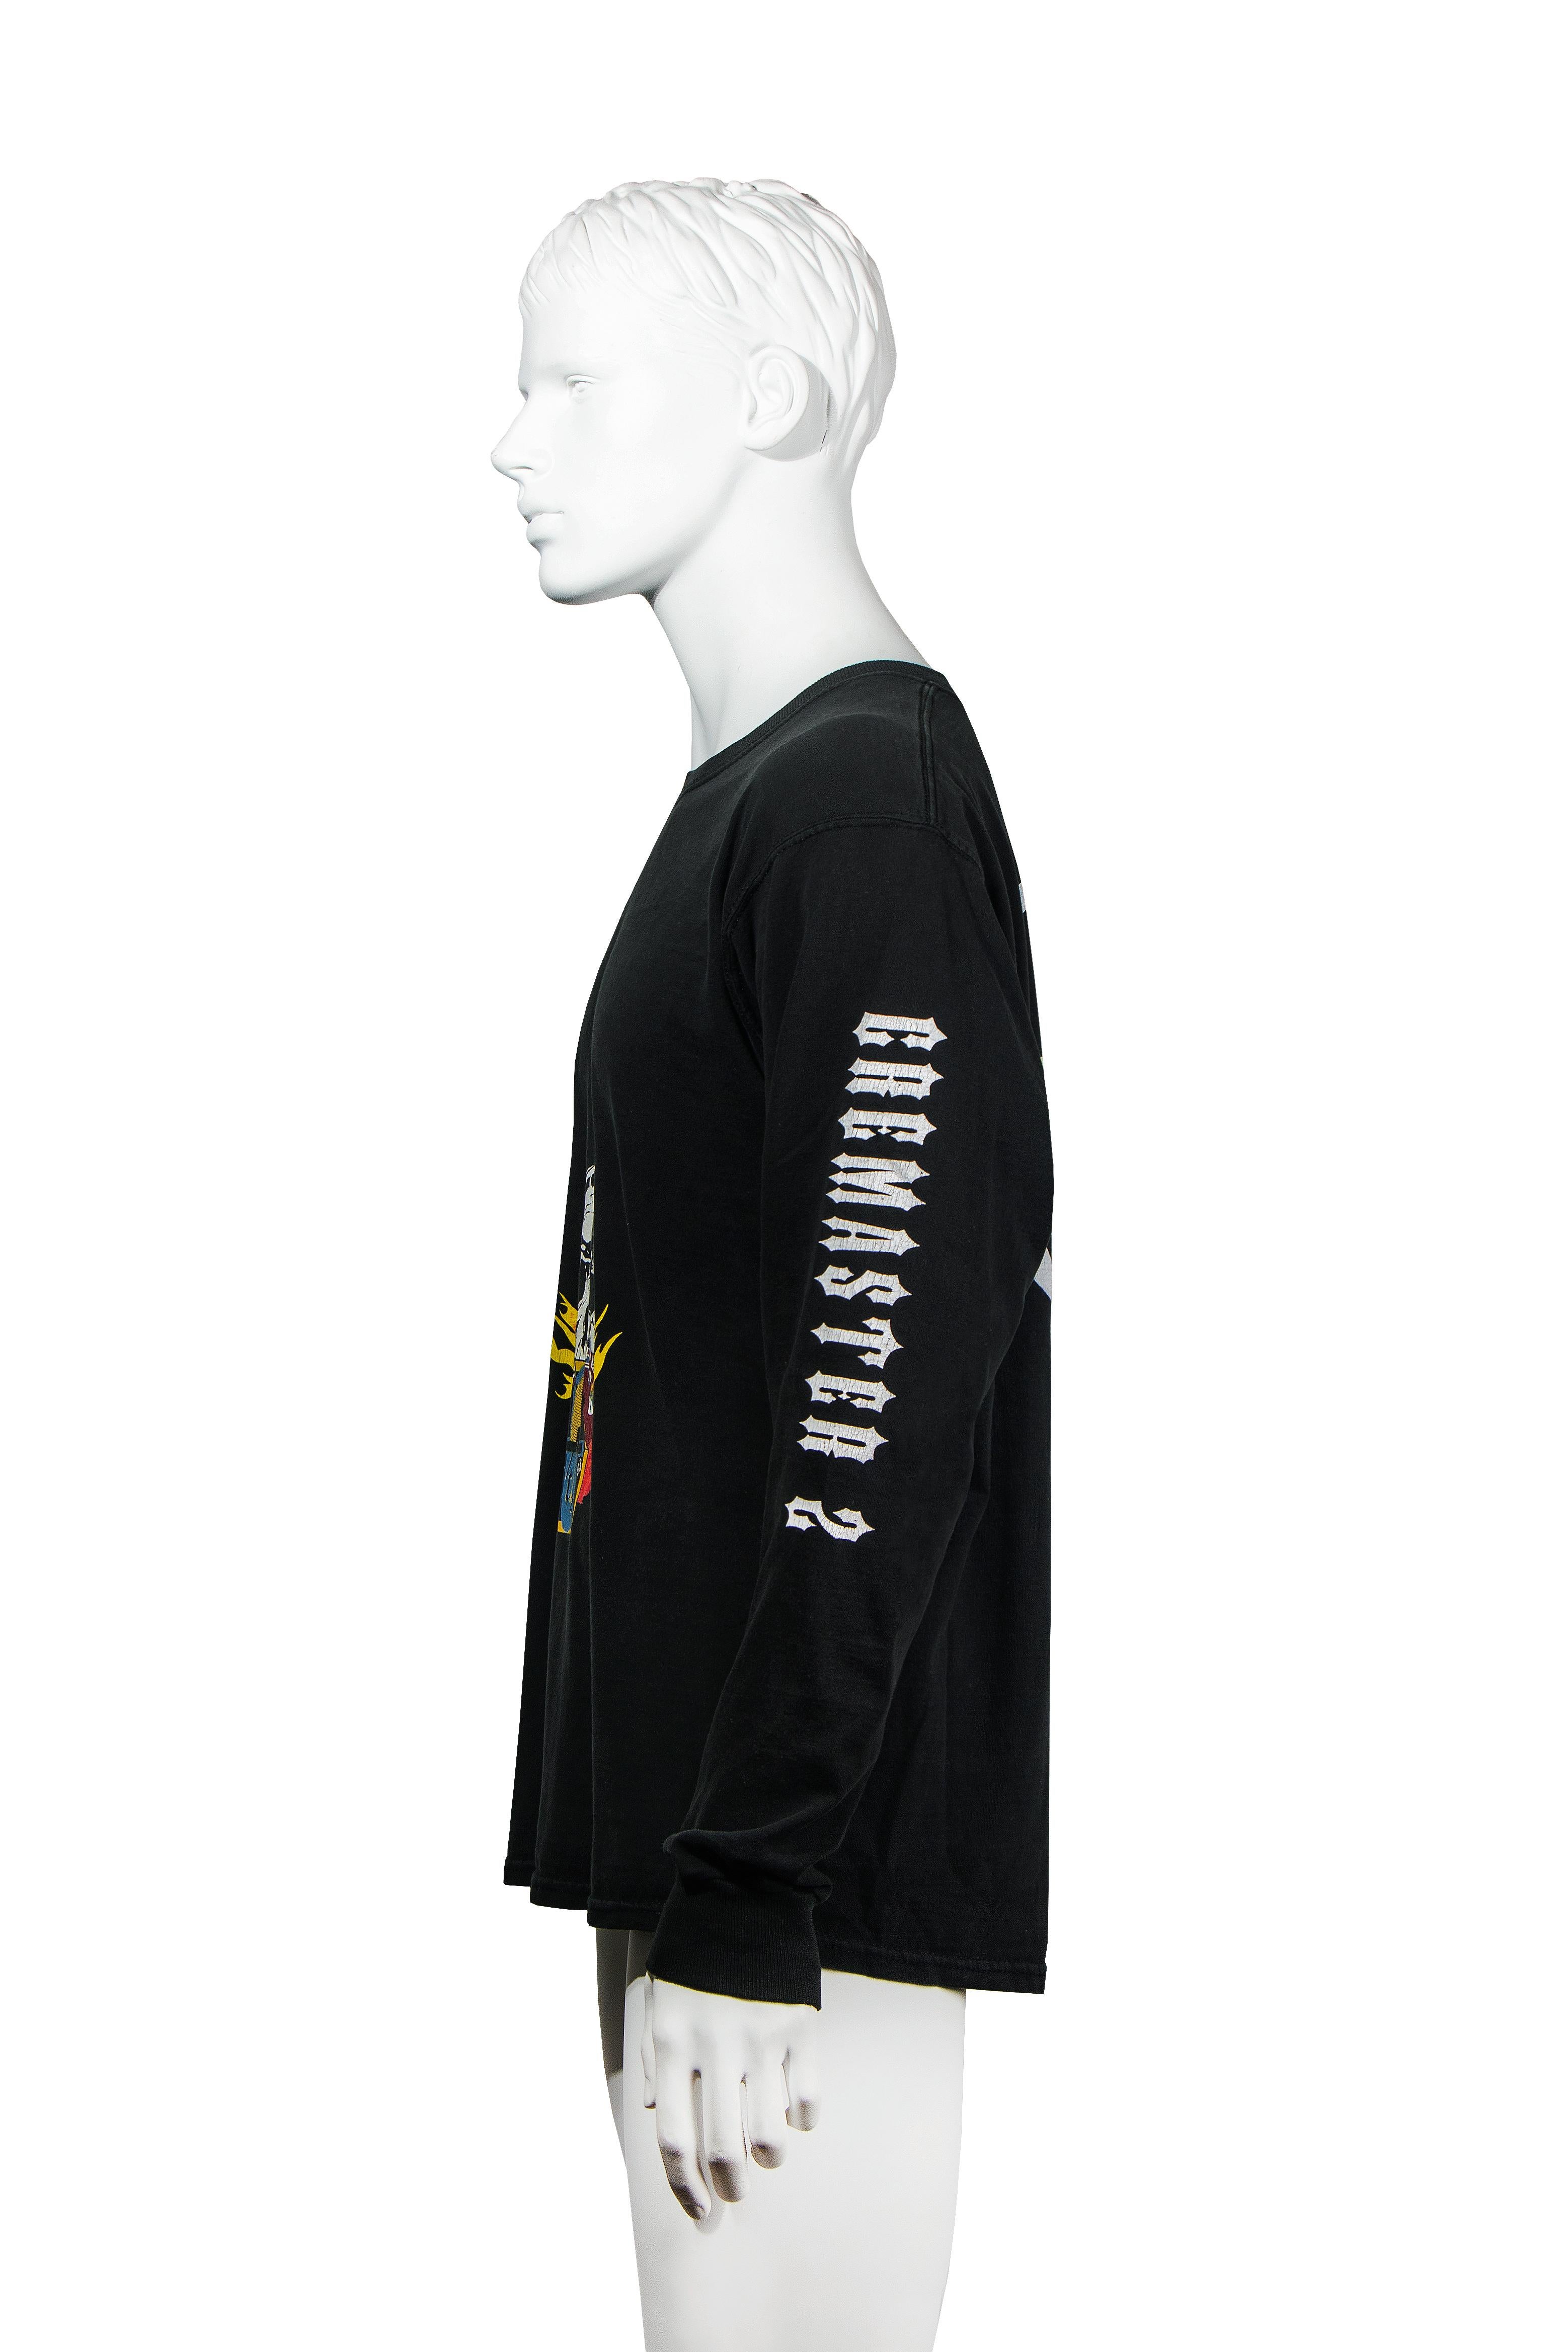 Matthew Barney 'Cremaster 2' long sleeve t-shirt, c. 1999 Walker Art Center For Sale 2